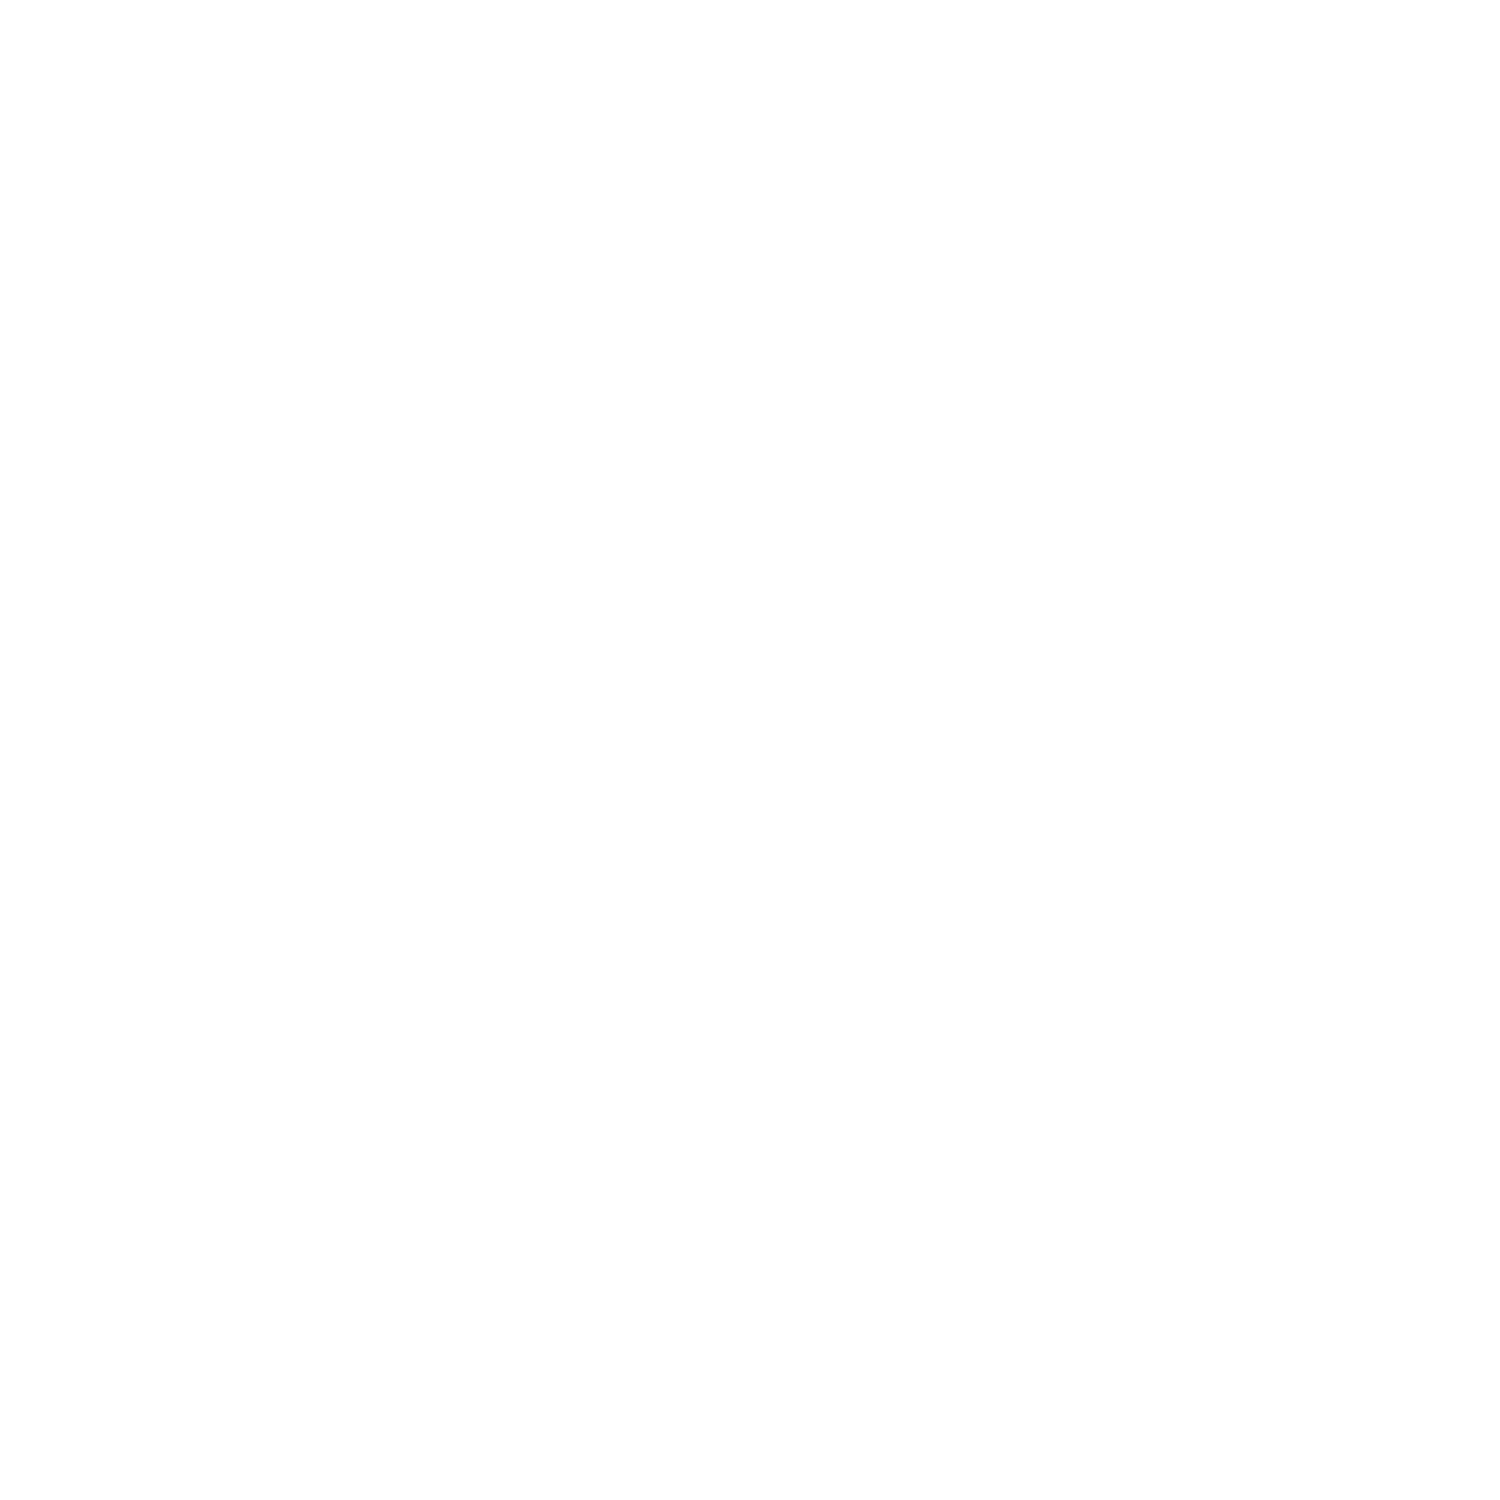 A77